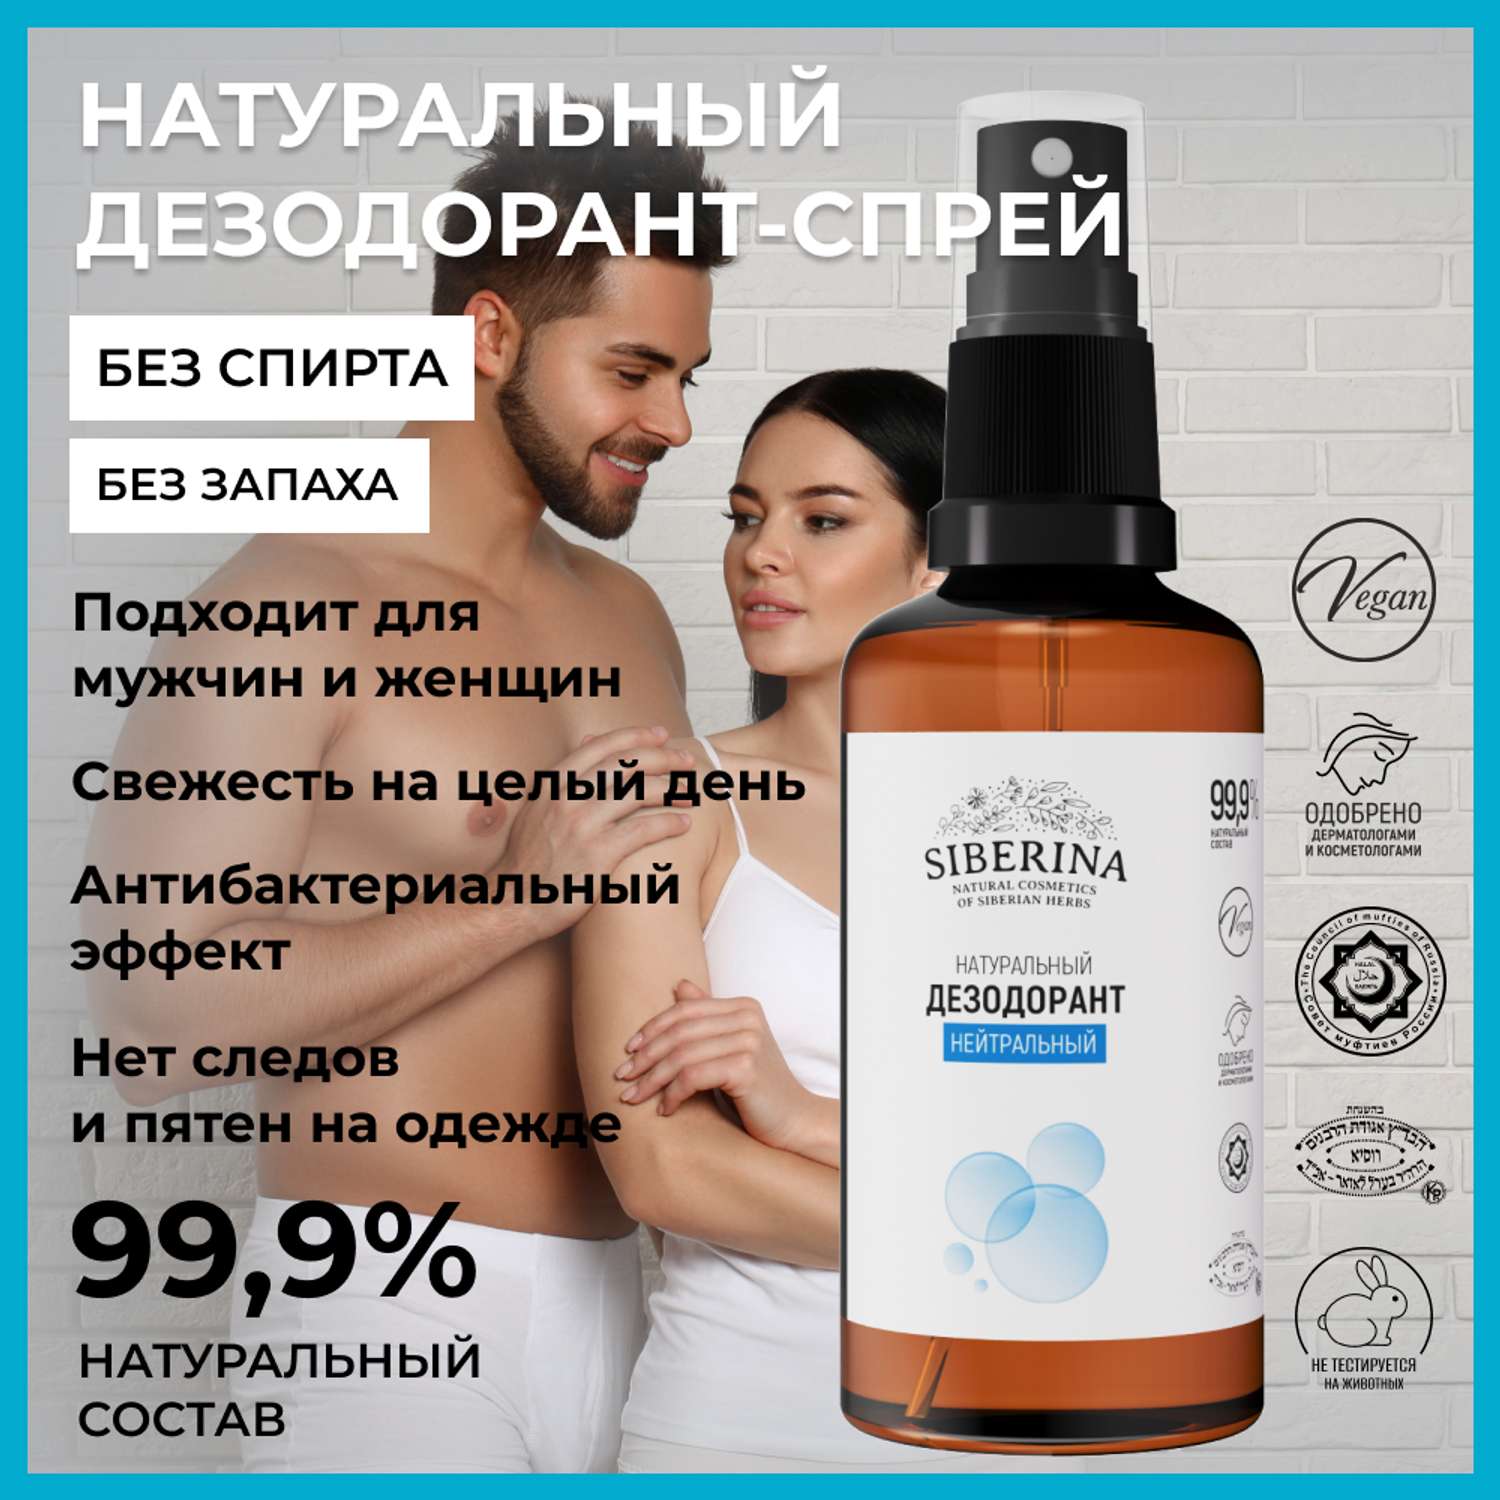 Дезодорант-спрей Siberina натуральный «Нейтральный» для чувствительной кожи 50 мл - фото 2